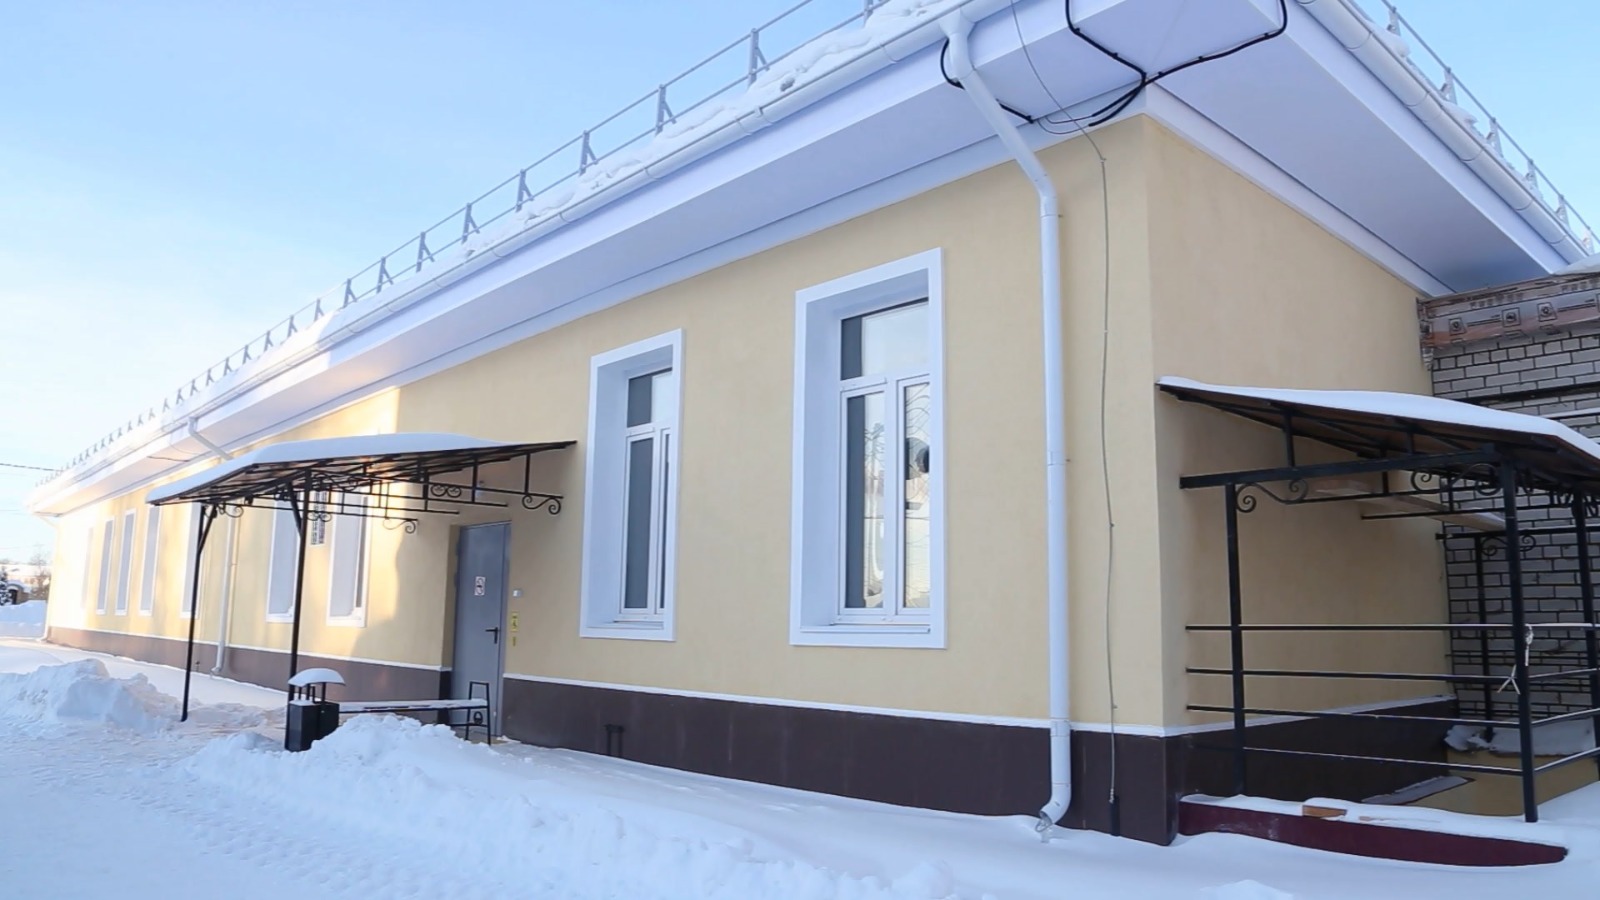 Новая поликлиника для взрослых в старинном костромском городе примет первых посетителей